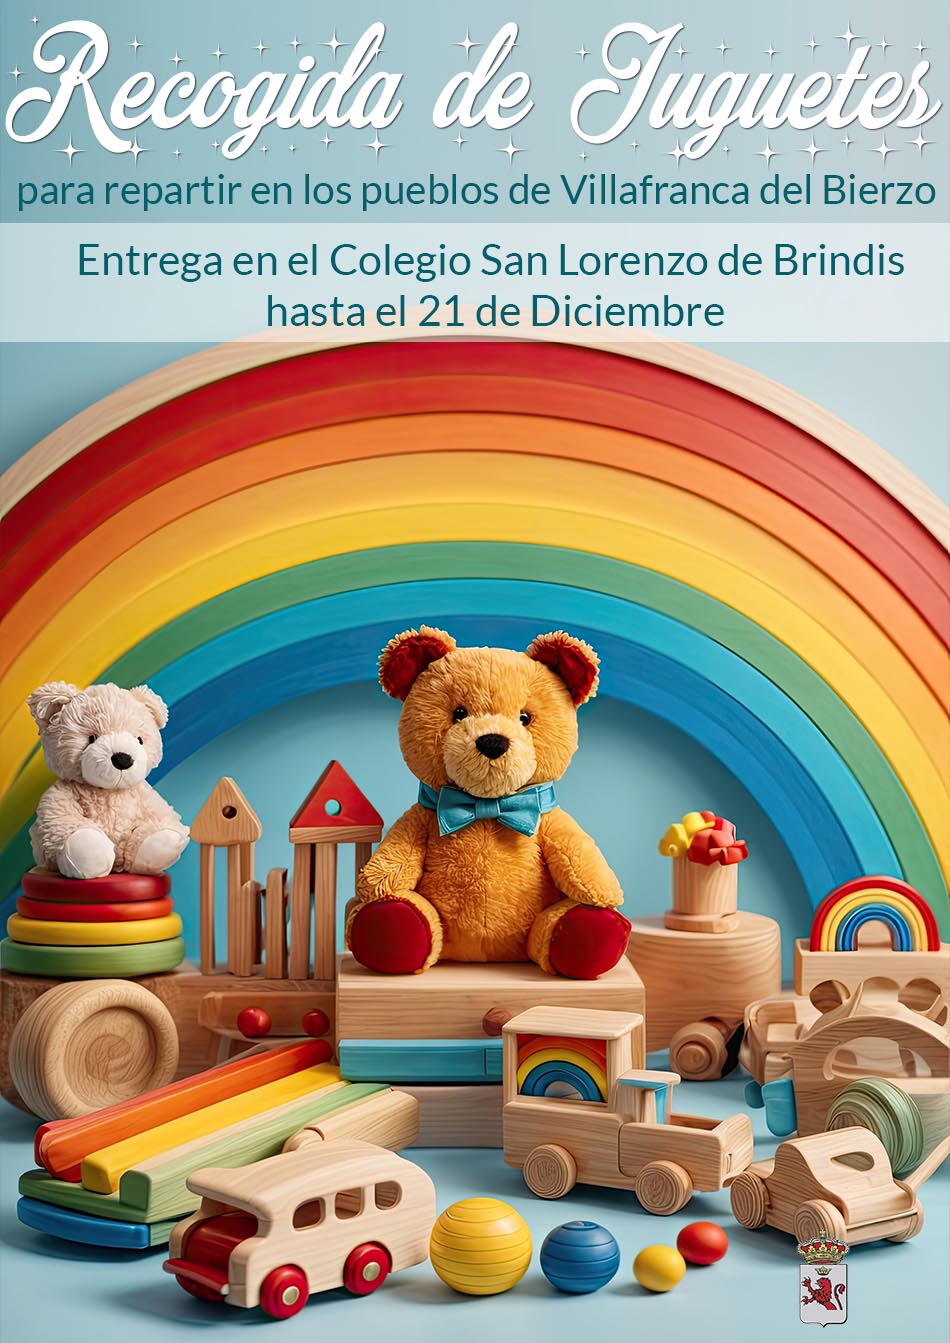 Recogida de juguetes en Villafranca del Bierzo